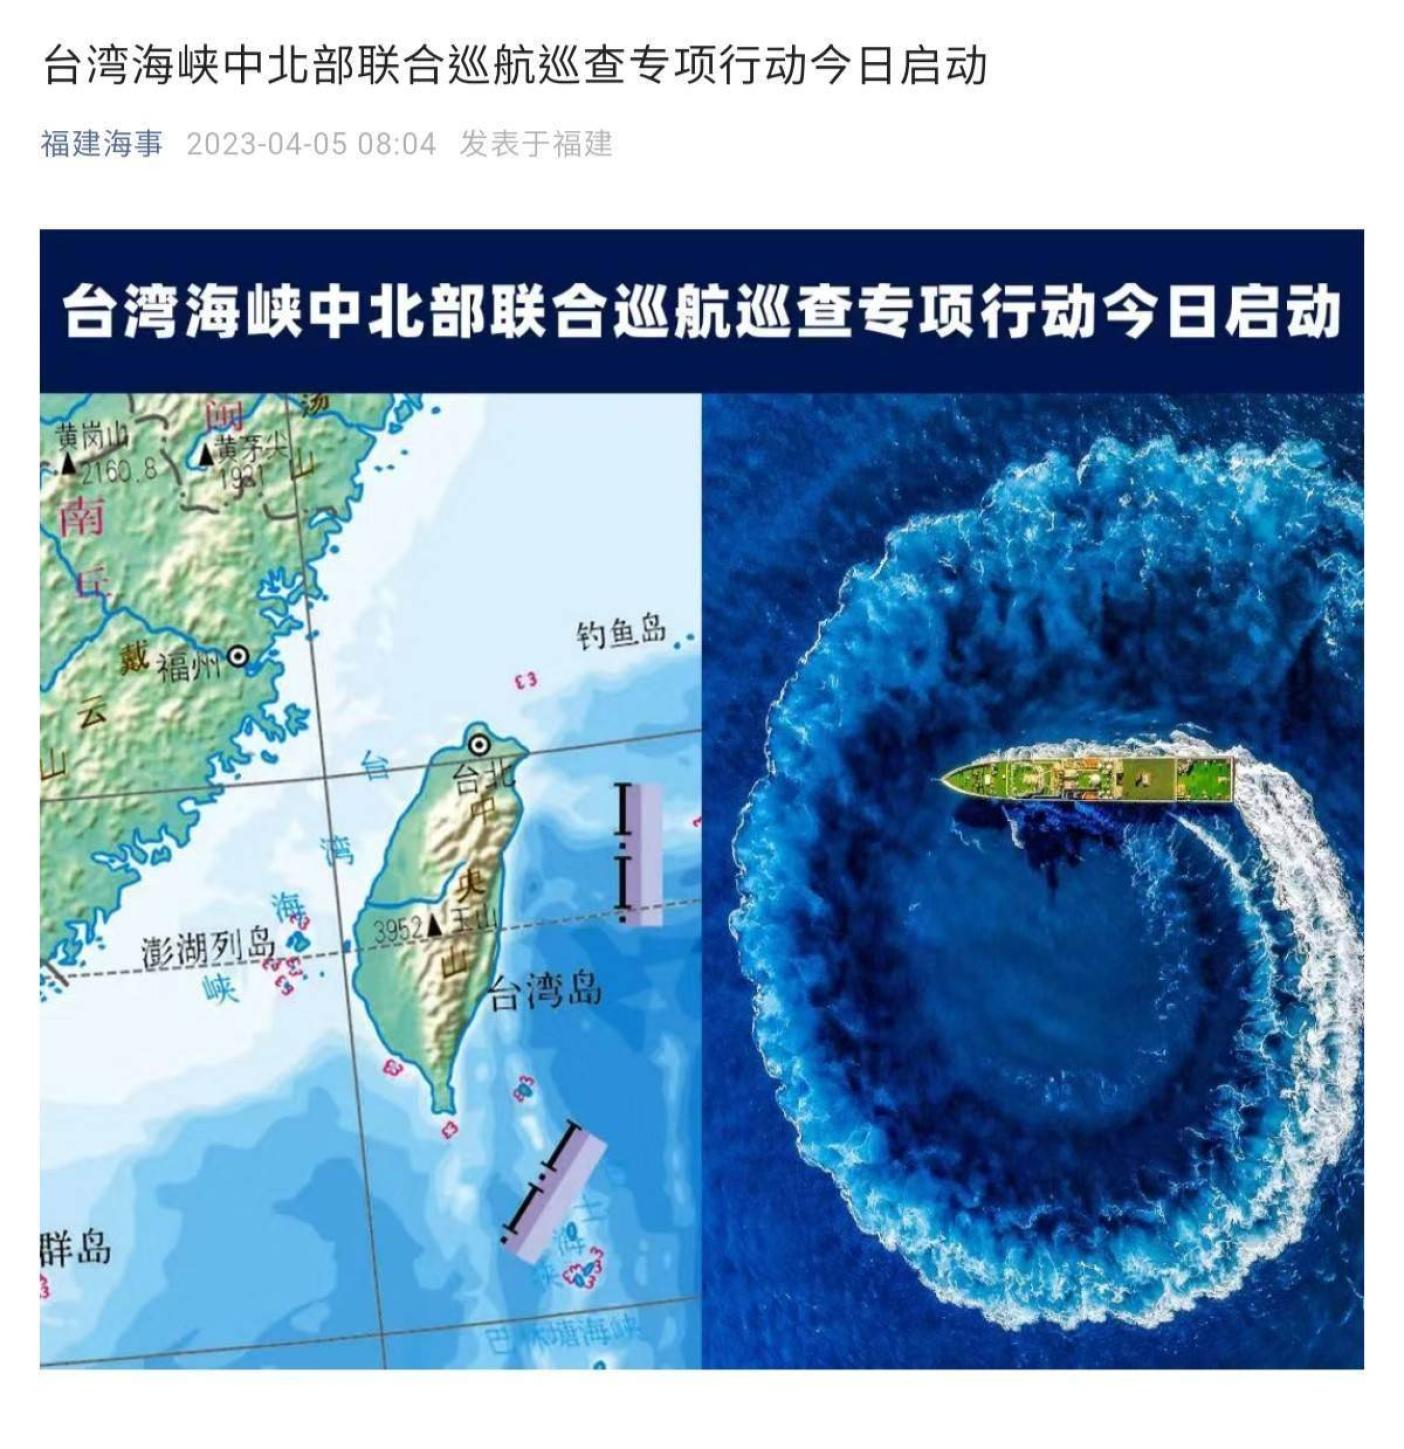 中共宣布啟動「台灣海峽中北部聯合巡航巡查專項行動」。翻攝中共網站